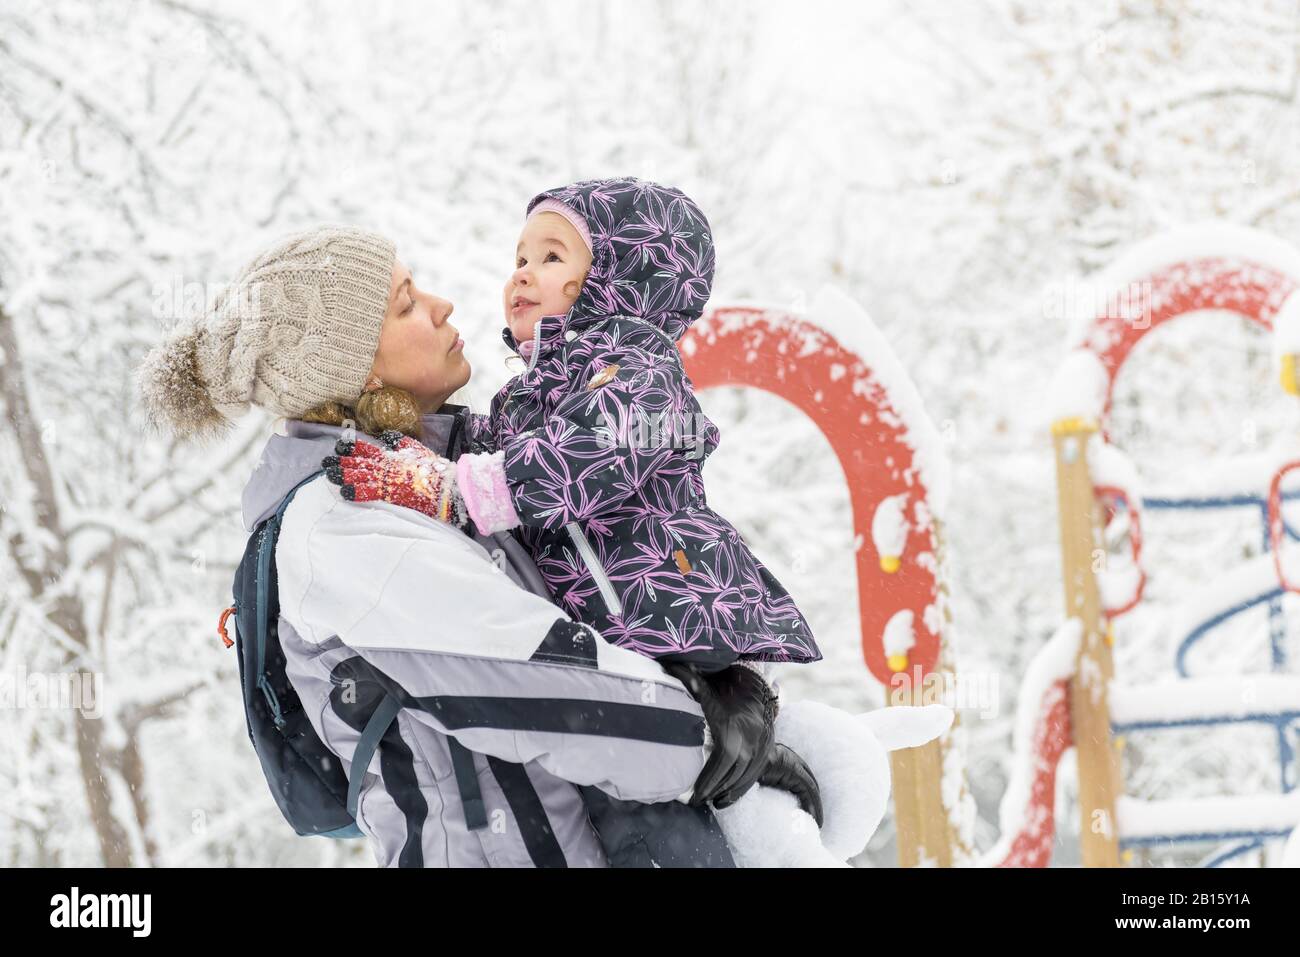 Fröhliches kleines Kind spielt im Winter mit der Mutter in einem verschneiten Park. Fröhliche Familienspaziergänge bei Schneefall. Süßes Baby-Mädchen sitzt auf den Händen der Mutter. Stockfoto